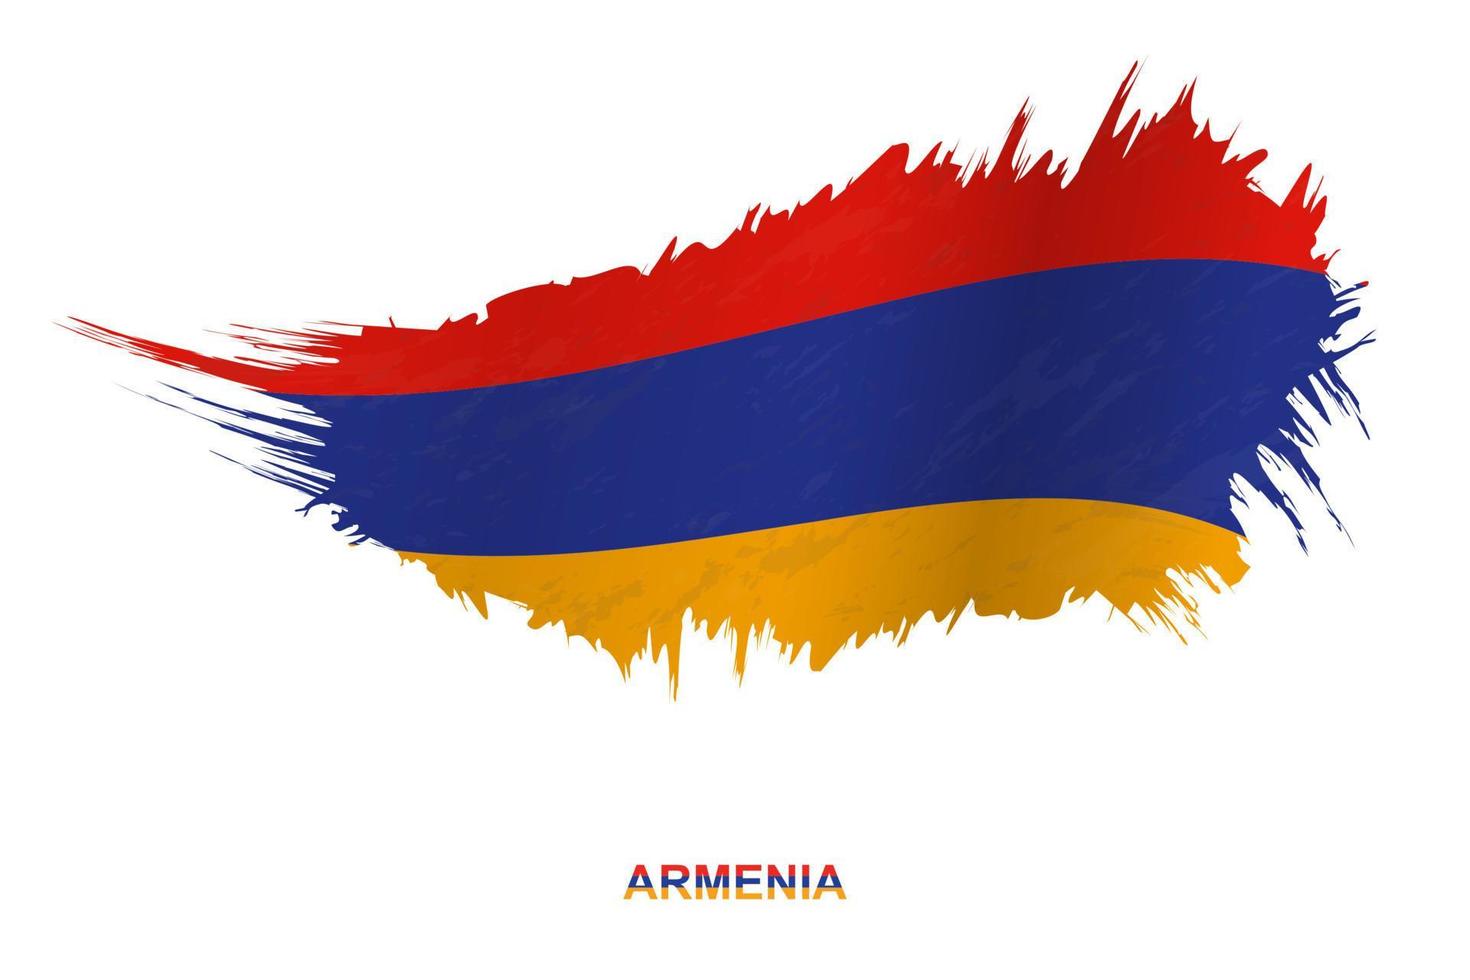 drapeau de l'arménie dans un style grunge avec effet ondulant. vecteur